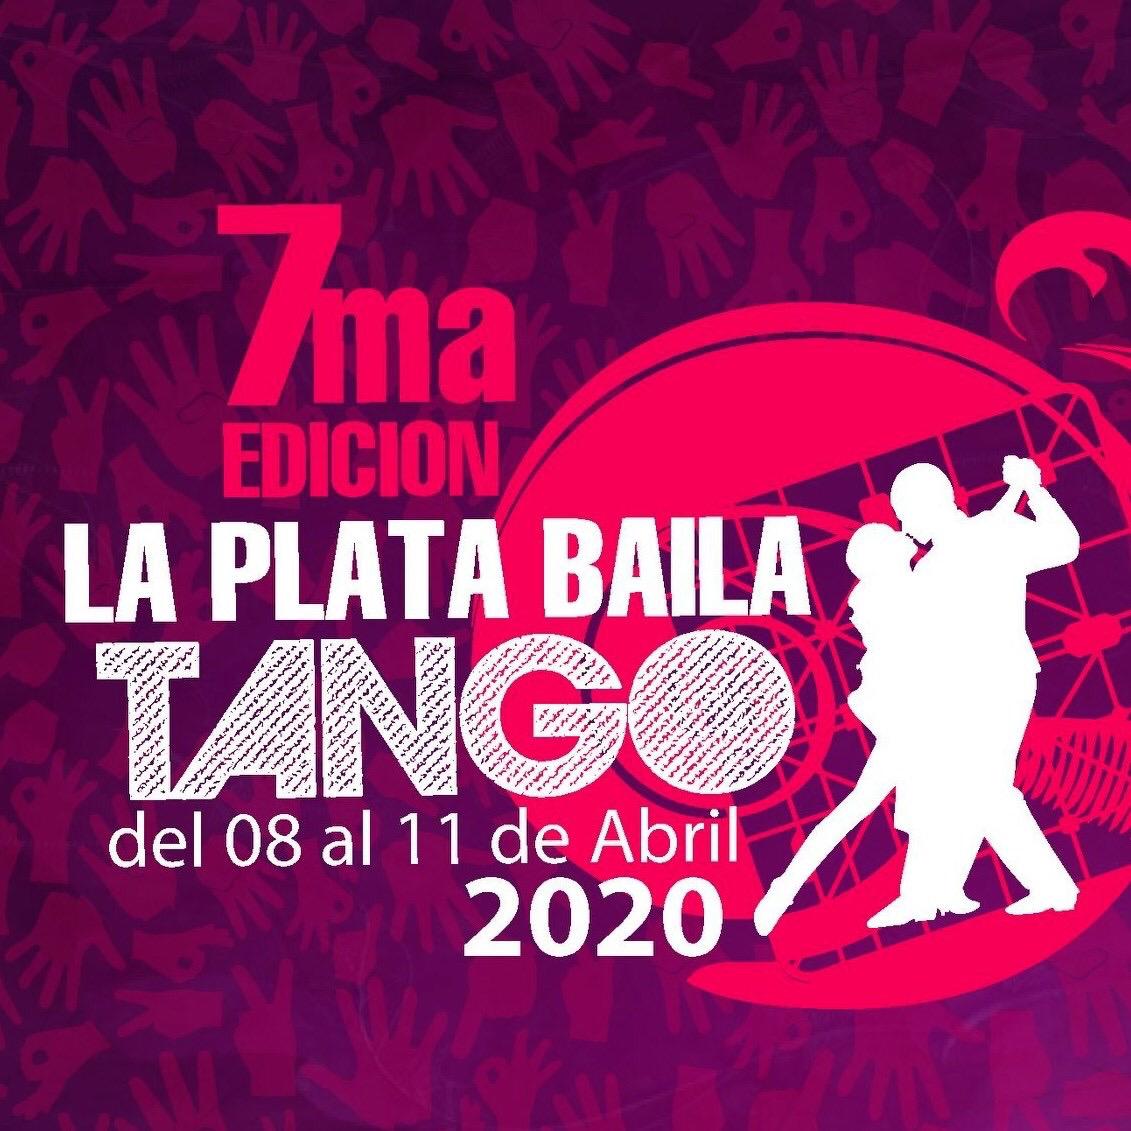 Festival La Plata Baila Tango – 7ma Edición